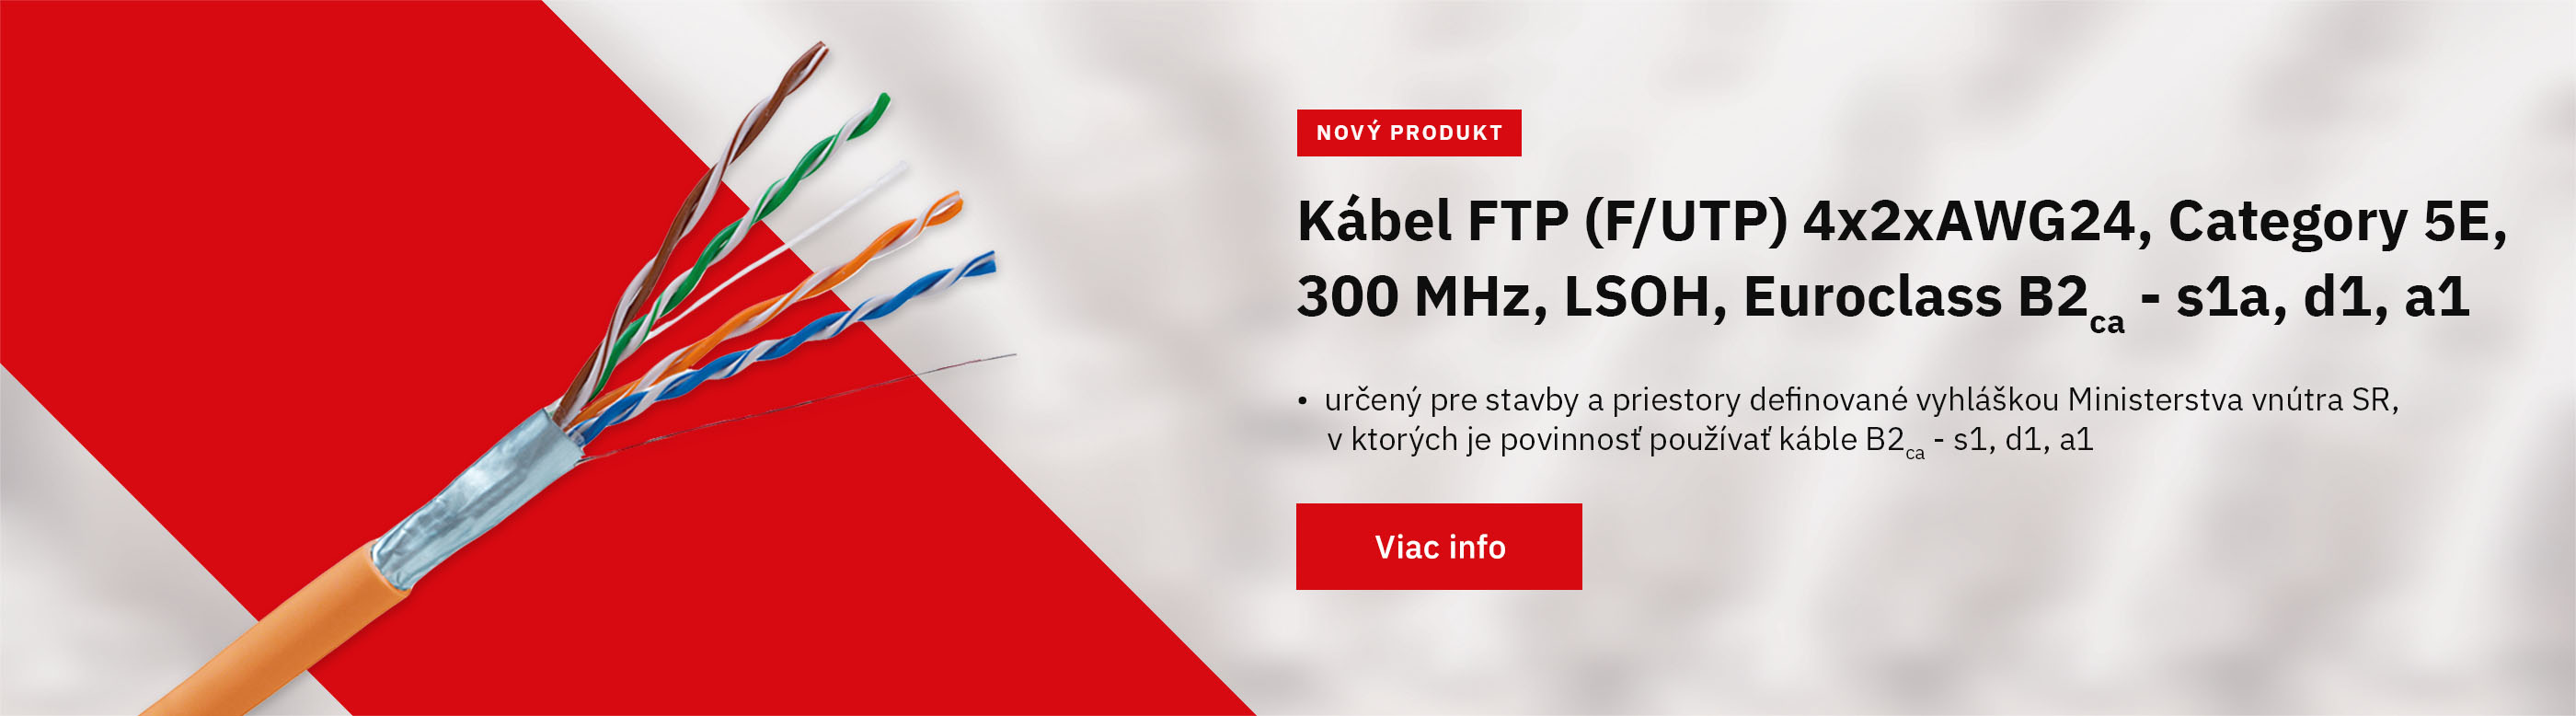 69-cat5e-ftp-kabel-banner-keline-sk.jpg